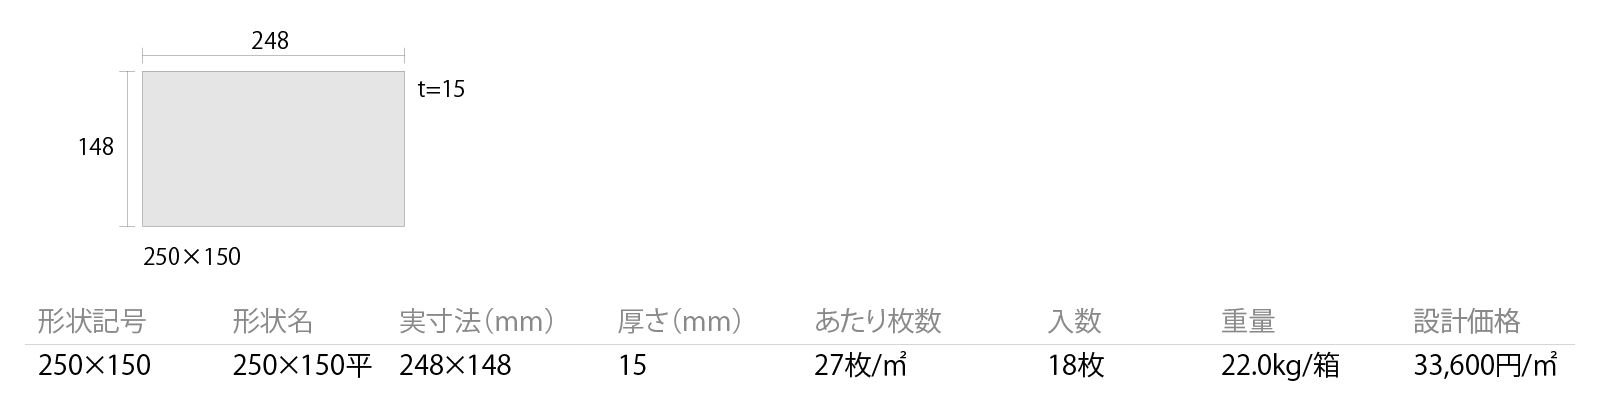 ジャパン／セイジ［JPB］形状図画像1